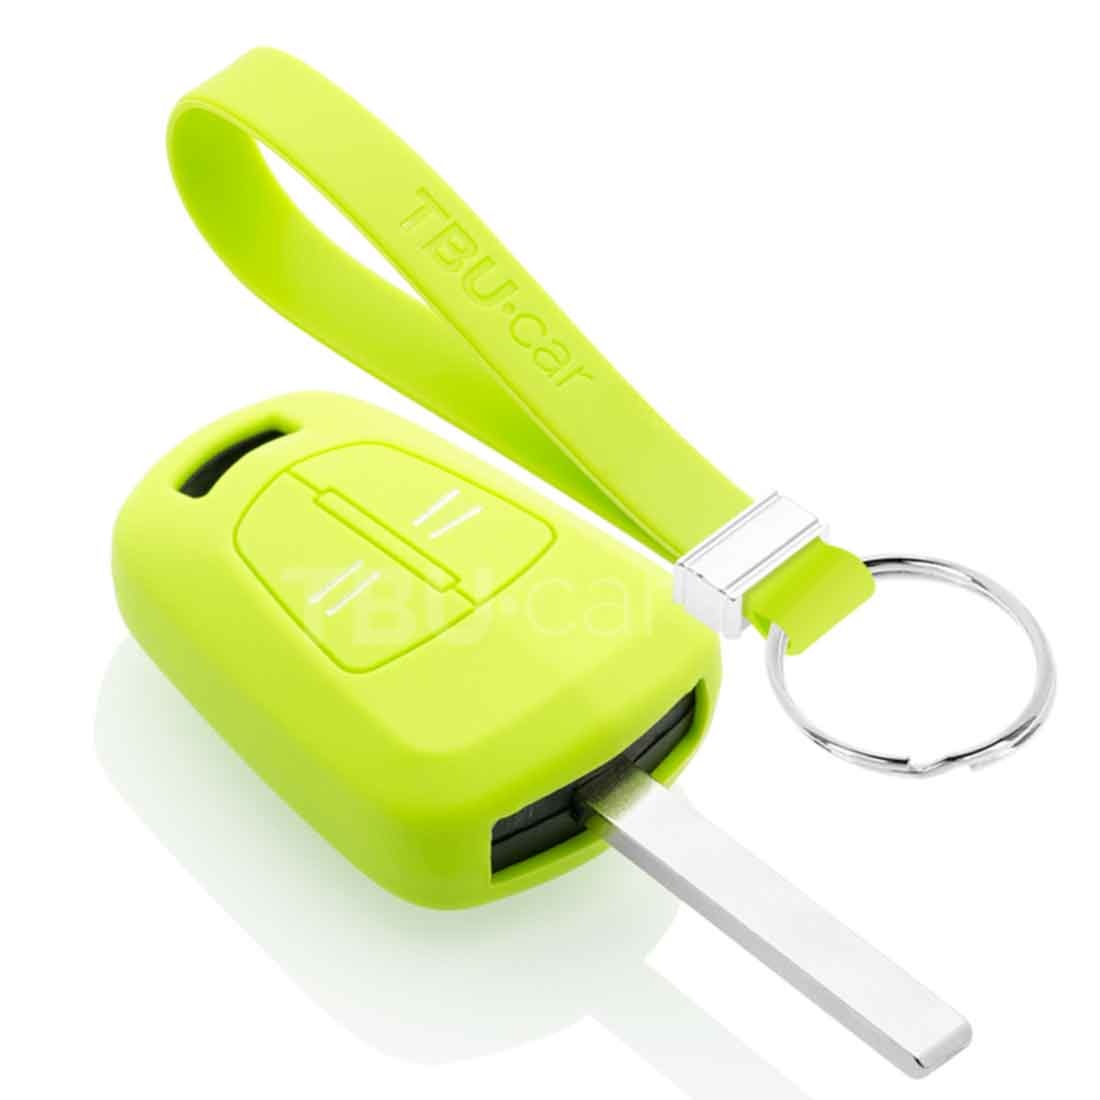 TBU car TBU car Sleutel cover compatibel met Opel - Silicone sleutelhoesje - beschermhoesje autosleutel - Lime groen